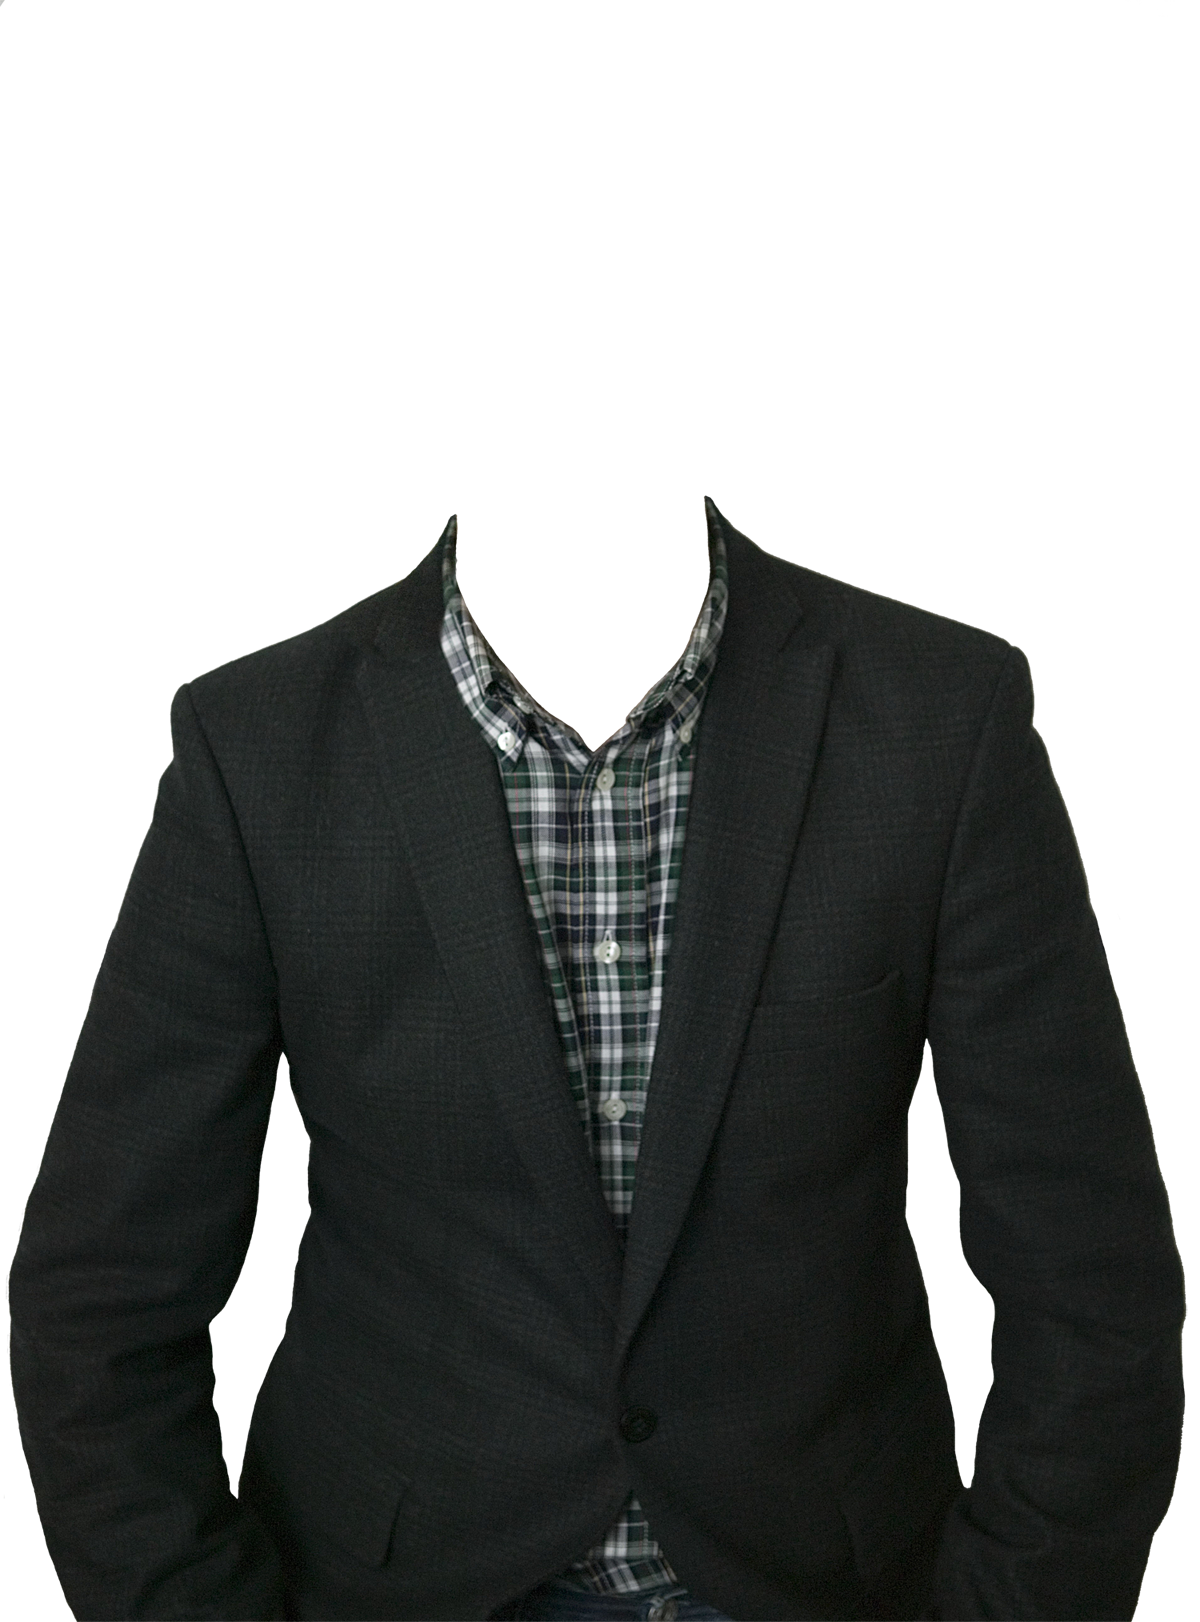 Suit Transparent Image